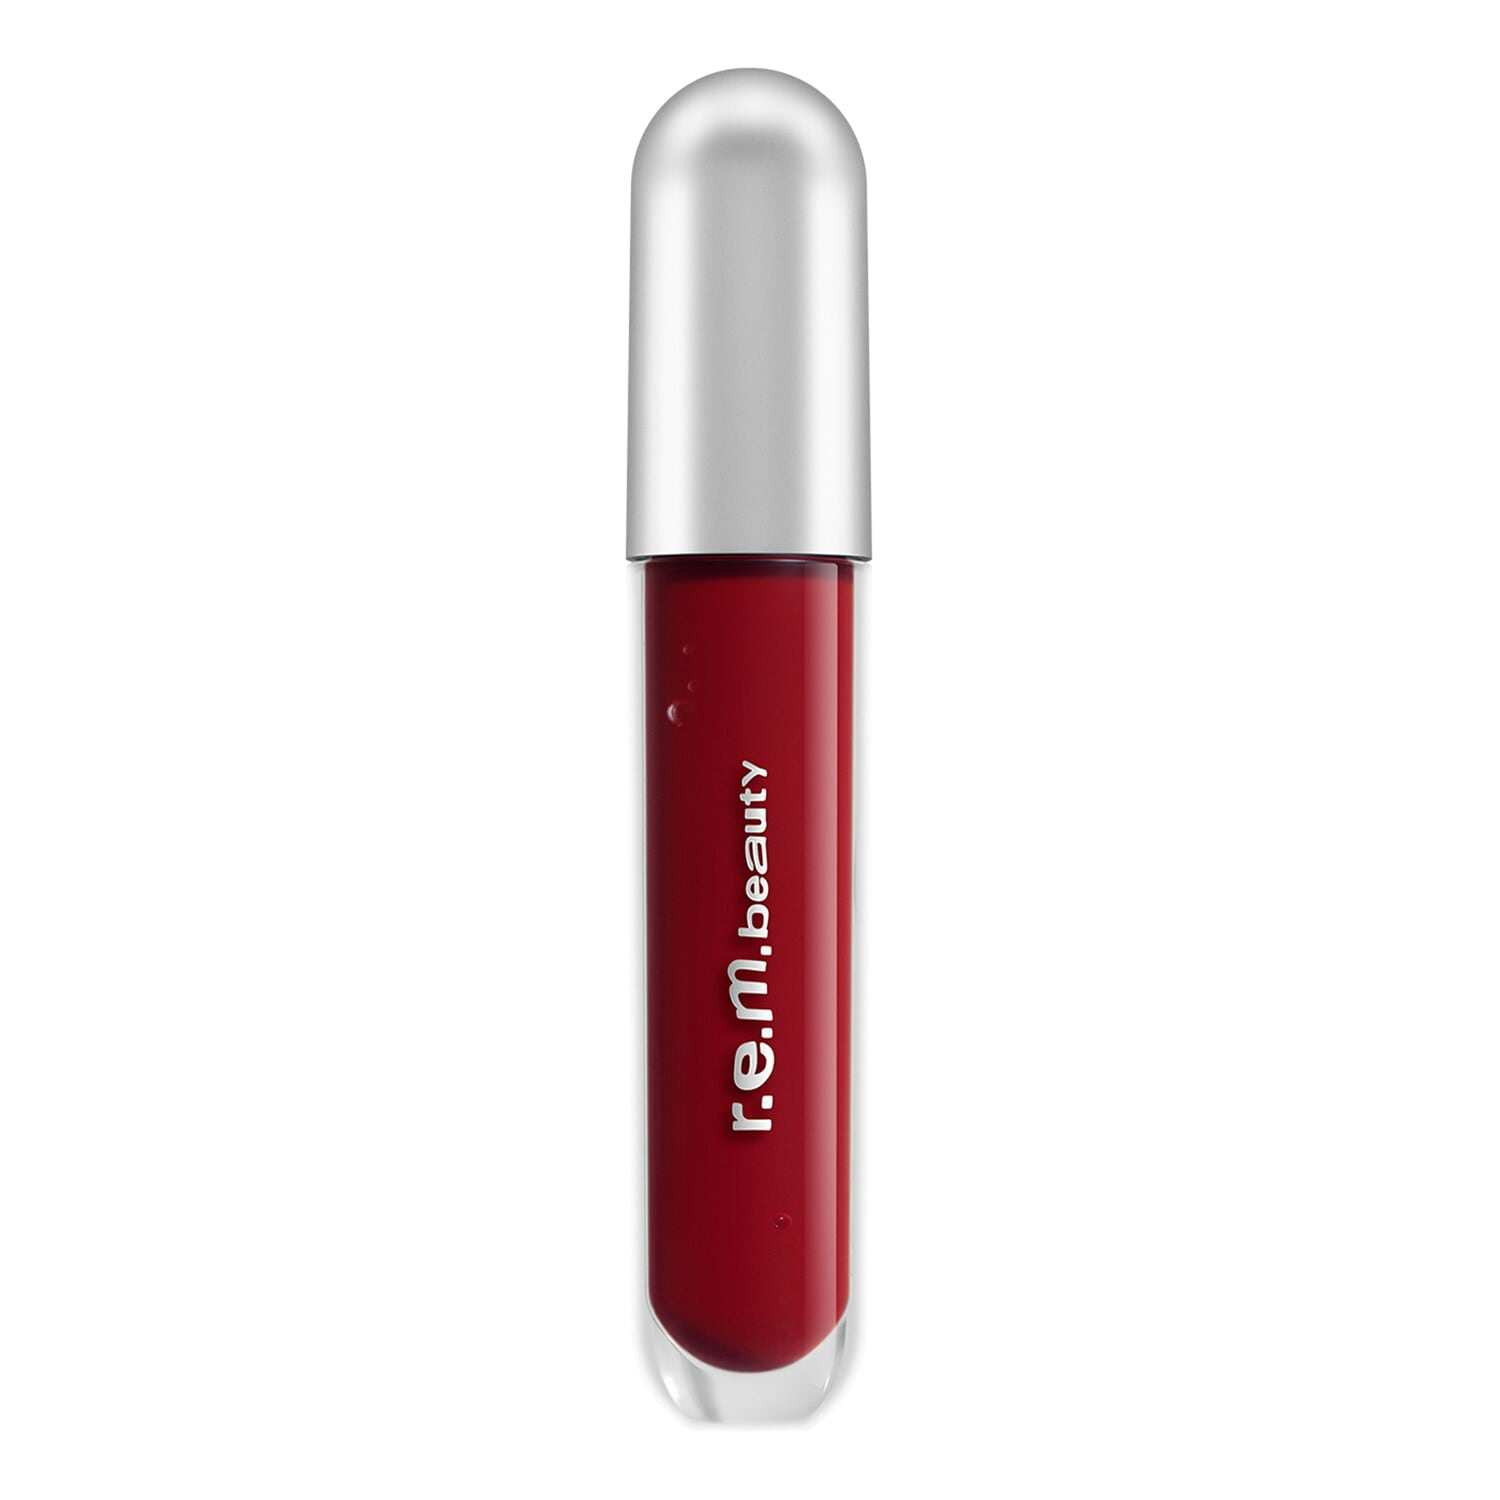 Essential Drip Glossy Balm Ba´lsamo brillante para los labios de r e m  beauty 17,99 euros